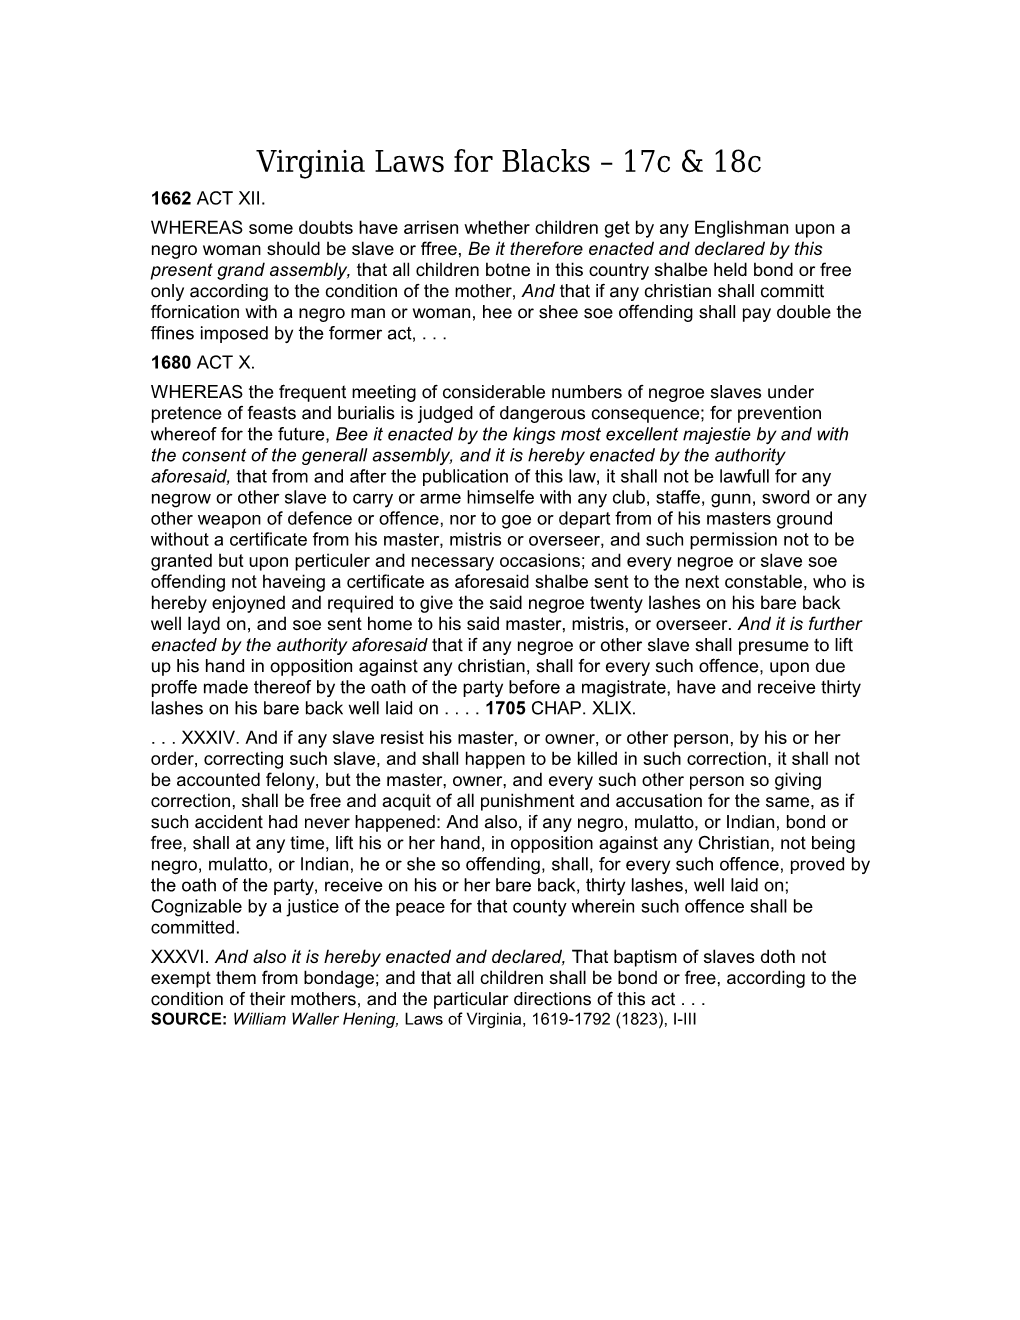 Virginia Laws for Blacks 17C & 18C